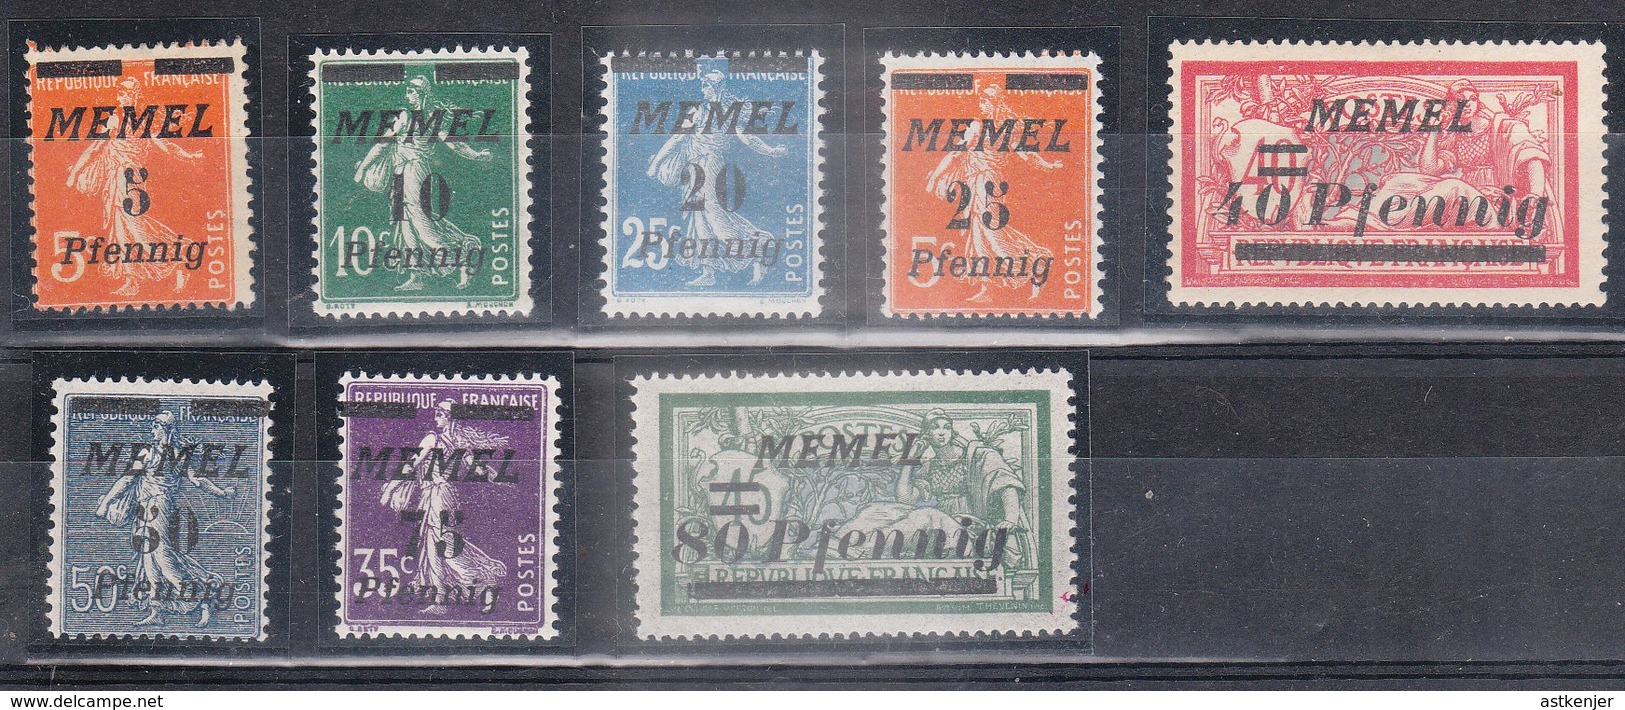 MEMEL - Petite Collection De 8 Timbres (année 1922)  - TOP AFFAIRE - Unused Stamps